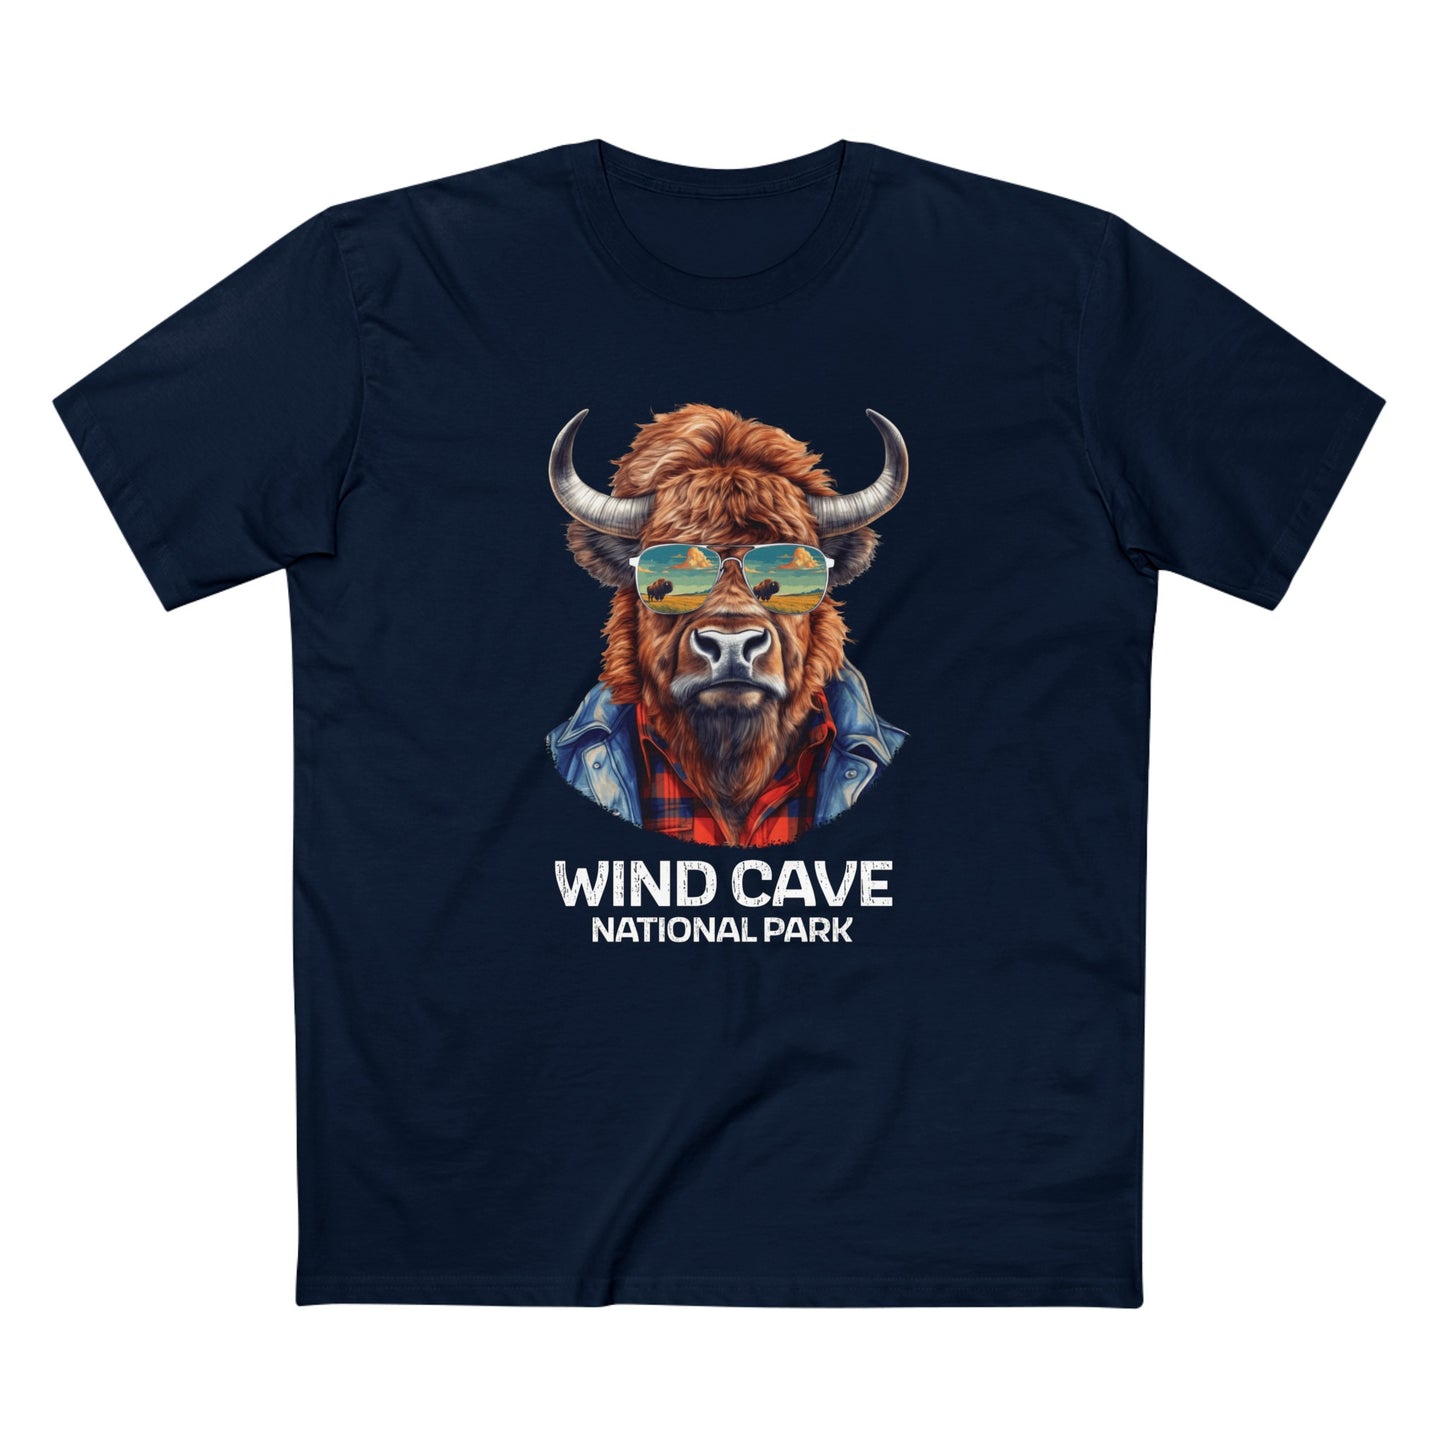 Wind Cave National Park T-Shirt - Bison